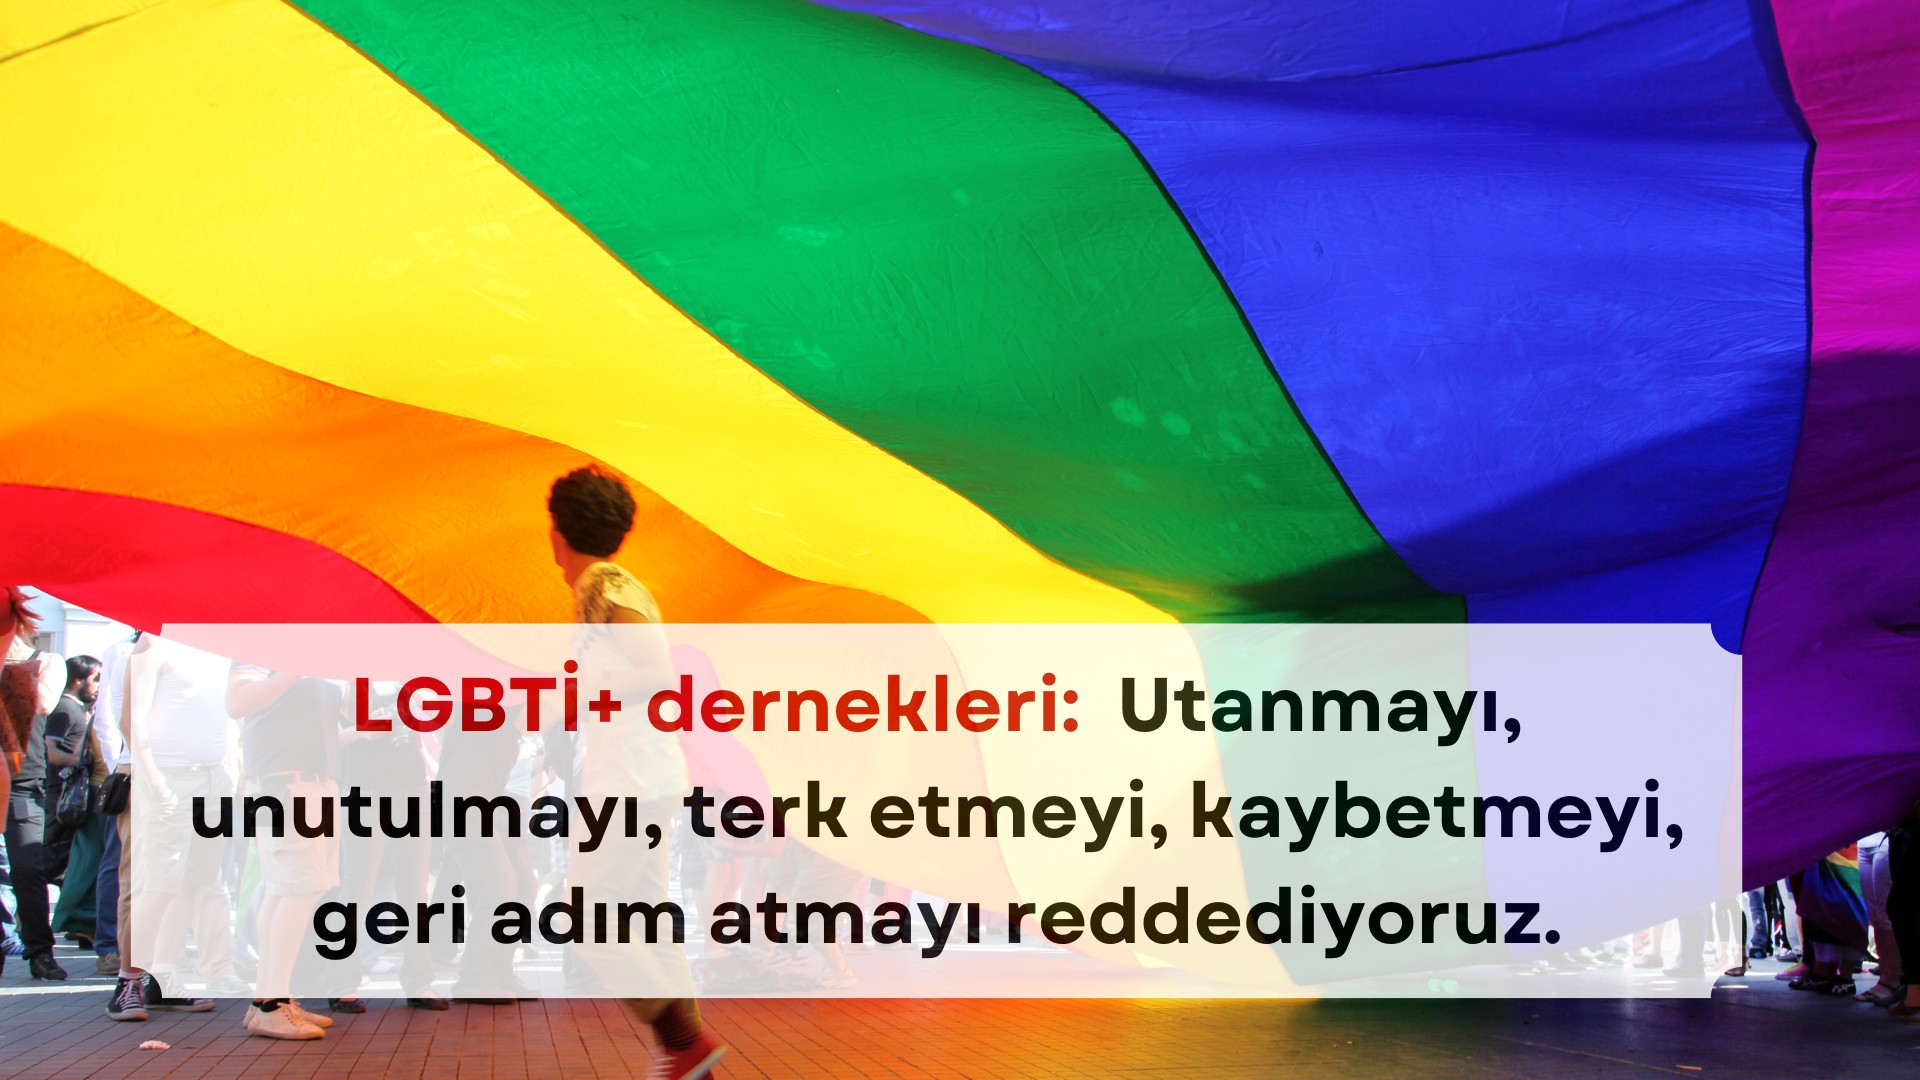 LGBTİ+ derneklerinden İstanbul LGBTİ+ Onur Haftası yasağına tepki Kaos GL - LGBTİ+ Haber Portalı